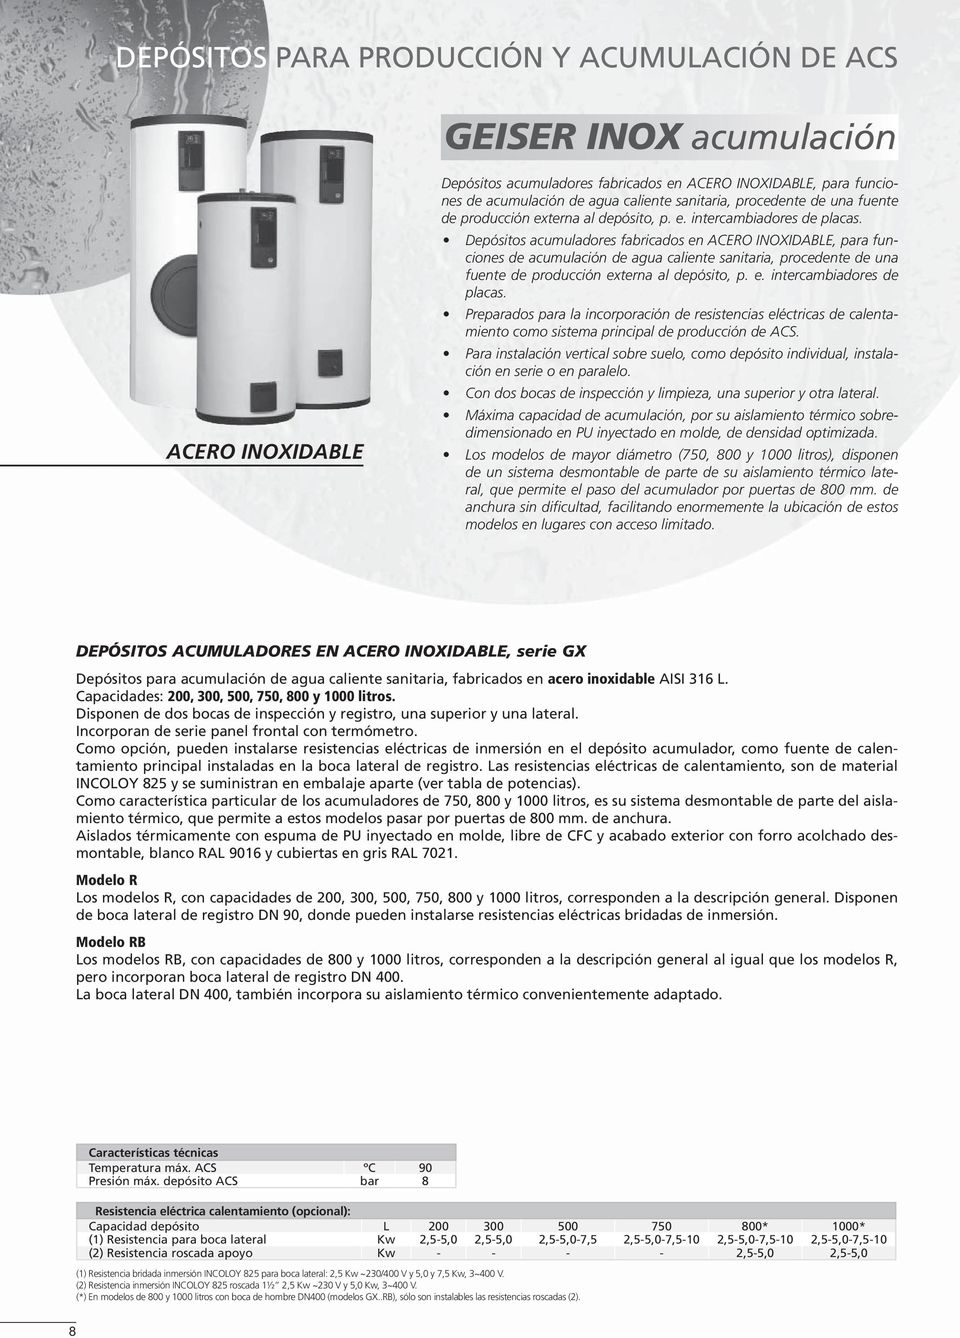 Depósitos acumuladores fabricados en ACERO INOXIDABLE, para funciones de acumulación de agua caliente  Preparados para la incorporación de resistencias eléctricas de calentamiento como sistema